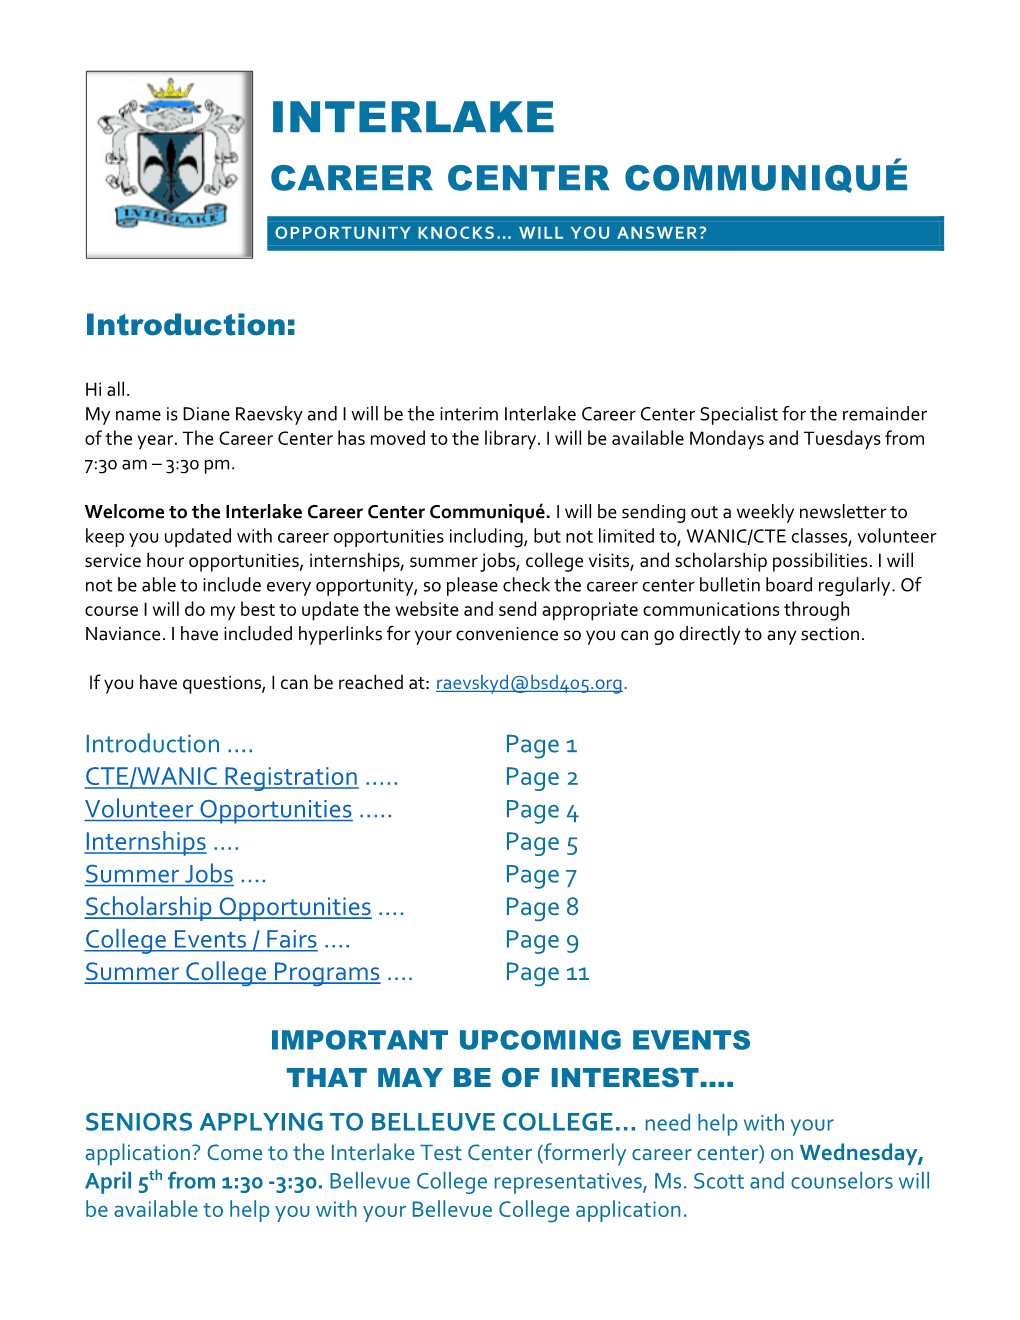 Interlake Career Center Communiqué